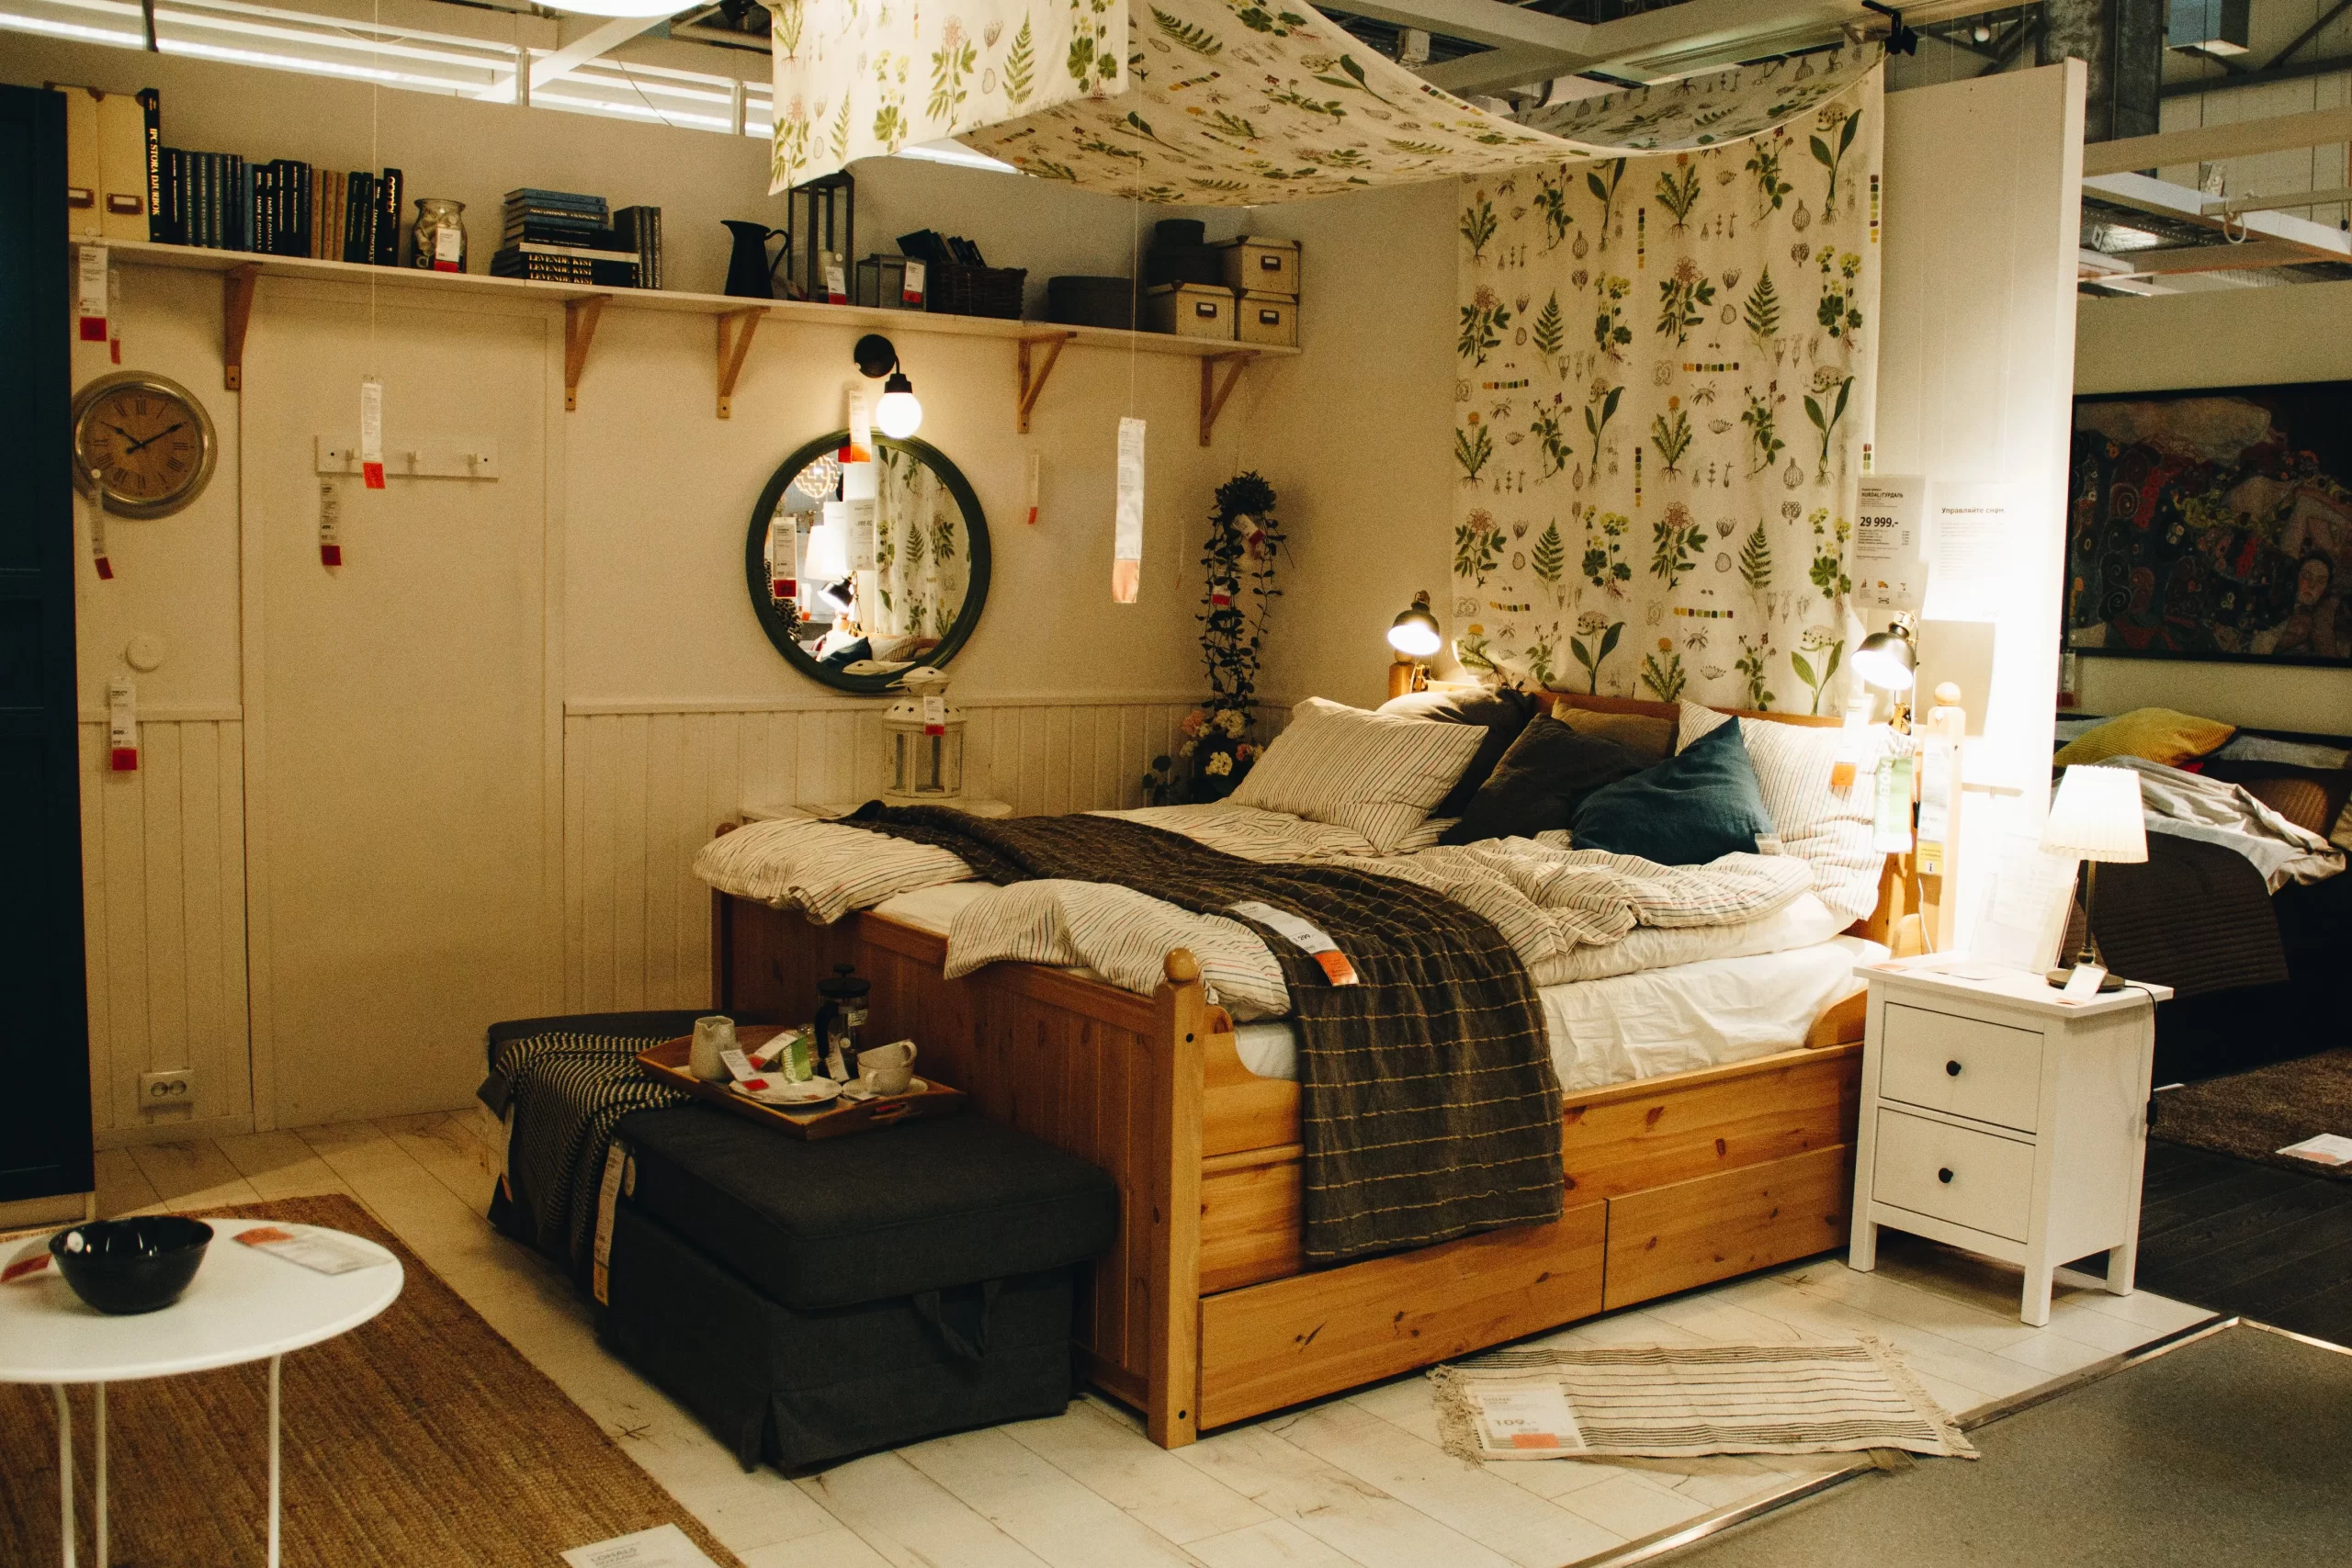 اتاق خوابی شلوغی که تخت خواب دو نفره در ان قرار دارد و آیینه نیز به دیوار متصل شده است و در بالای آیینه طاقچه نیز قرار دارد